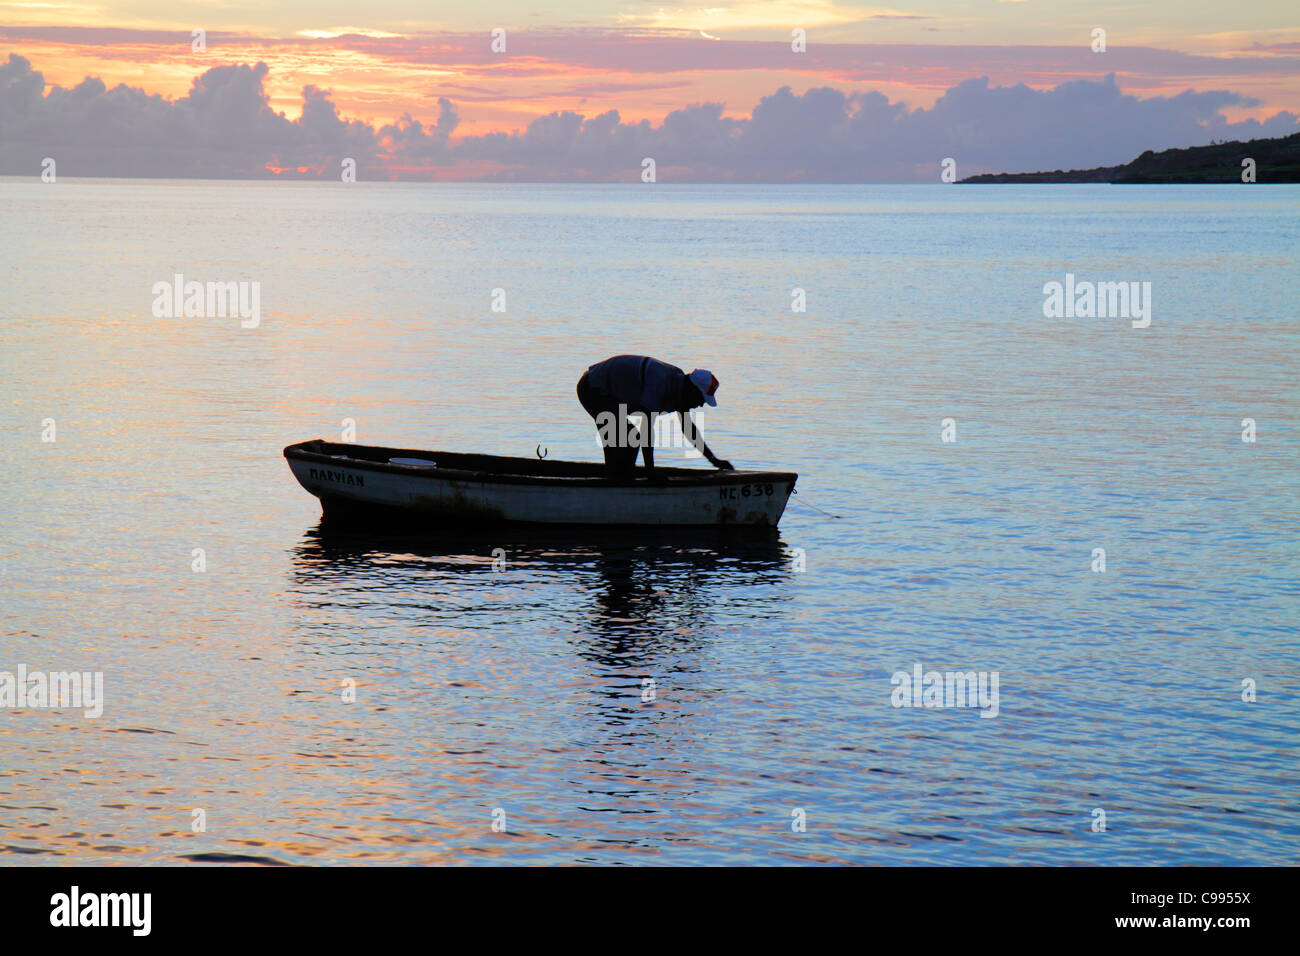 Curaçao,pays-Bas Lesse Leeward Antilles,ABC Islands,Dutch,Piscadera Bay Water,Caribbean Sea rowboat,man men male adulte adulte,coucher de soleil,twiligh Banque D'Images